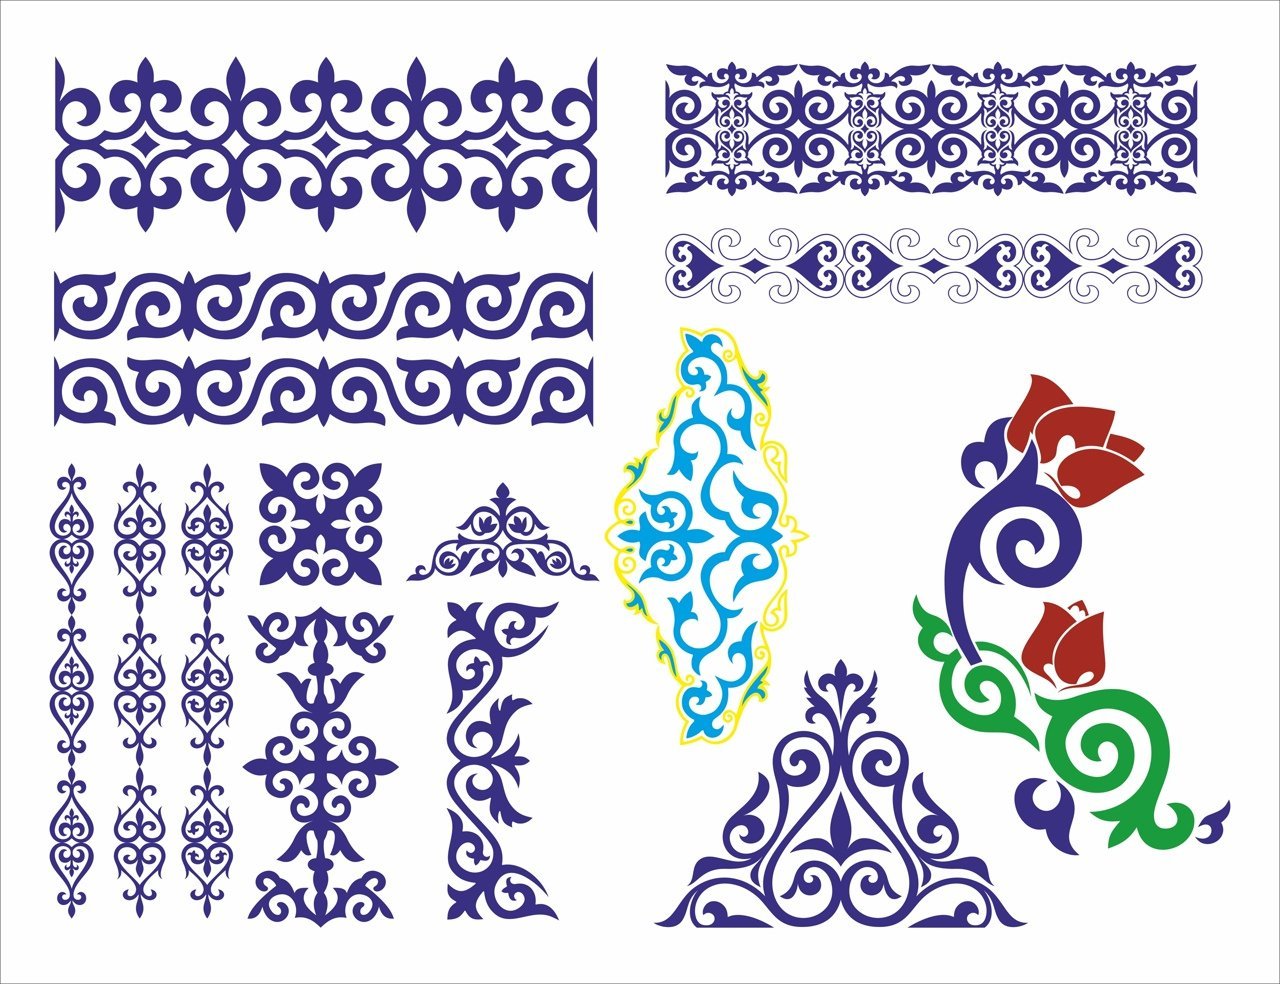 Исследователи казахского орнамента, история и образцы.